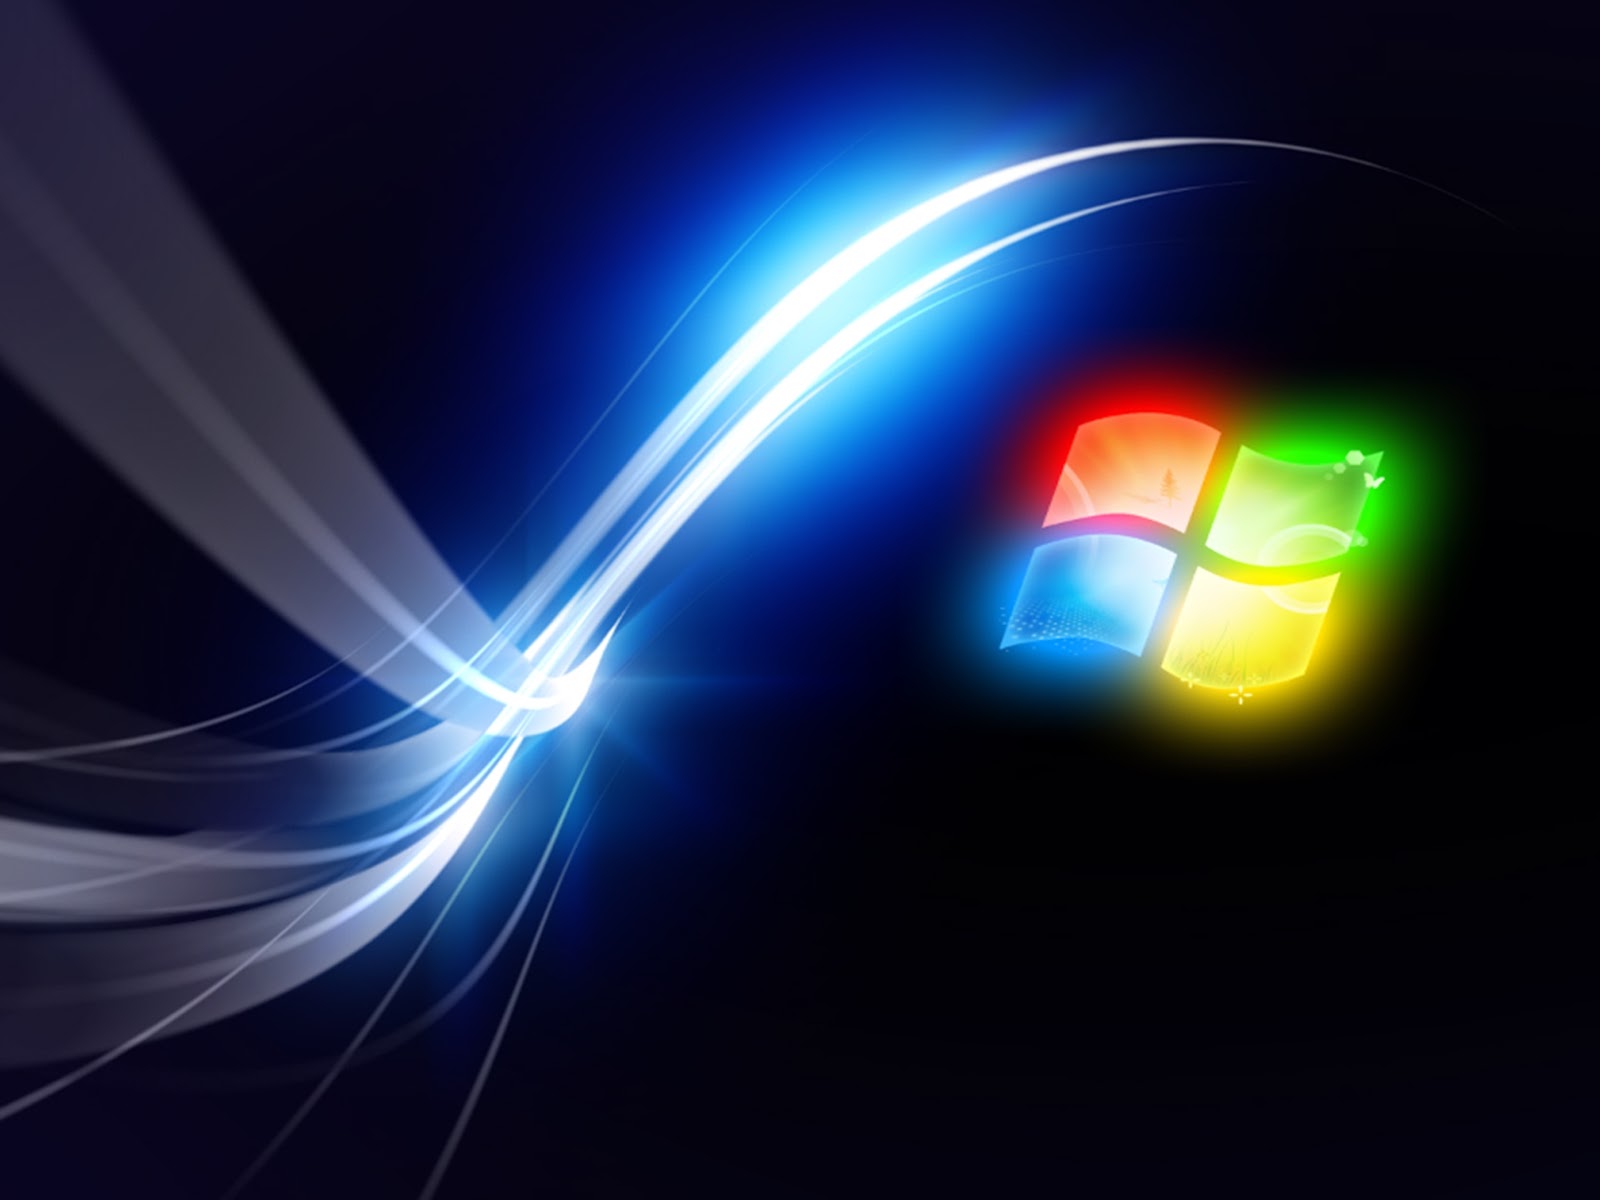 Hình nền desktop Windows 7 độc đáo sẽ giảm bớt căng thẳng của bạn trong những giờ làm việc khó khăn. Với những hình nền đầy màu sắc và phù hợp với sở thích của bạn, bạn sẽ có một môi trường làm việc thật tuyệt vời.